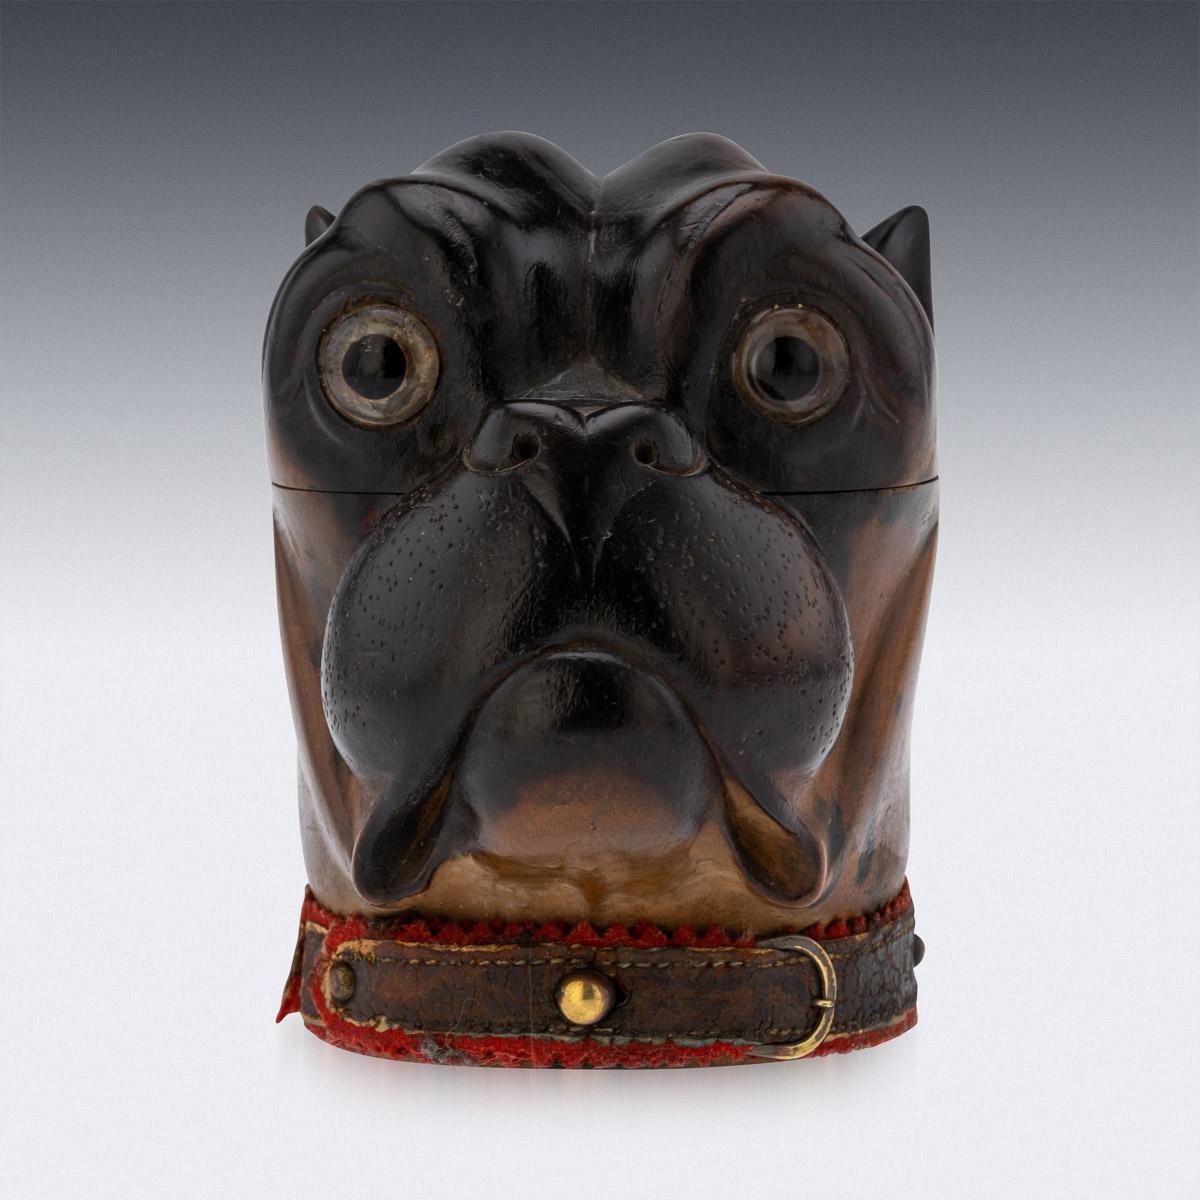 Viktorianisches Lignum-vitae-Tintenfass aus dem 19. Jahrhundert, modelliert als Kopf einer Bulldogge mit realistisch eingesetzten Glasaugen, originales Lederhalsband mit Kupferdruckknopf und silberner Präsentationsplakette auf der Rückseite (auf